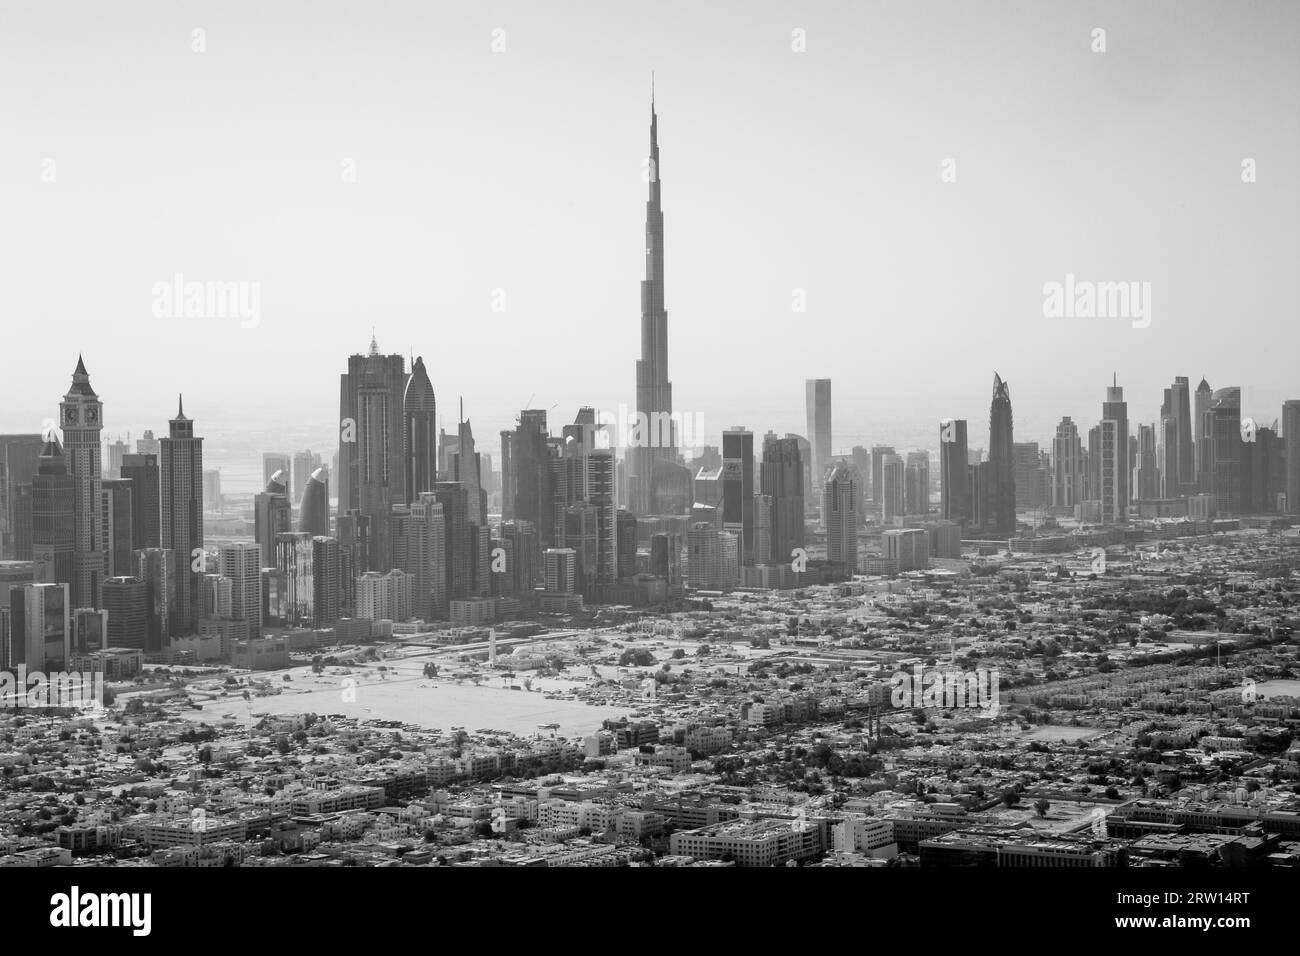 Dubaï, Émirats arabes Unis, 17 octobre 2014 : Skyline de la ville avec le célèbre Burj Khalifa pris en noir et blanc Banque D'Images